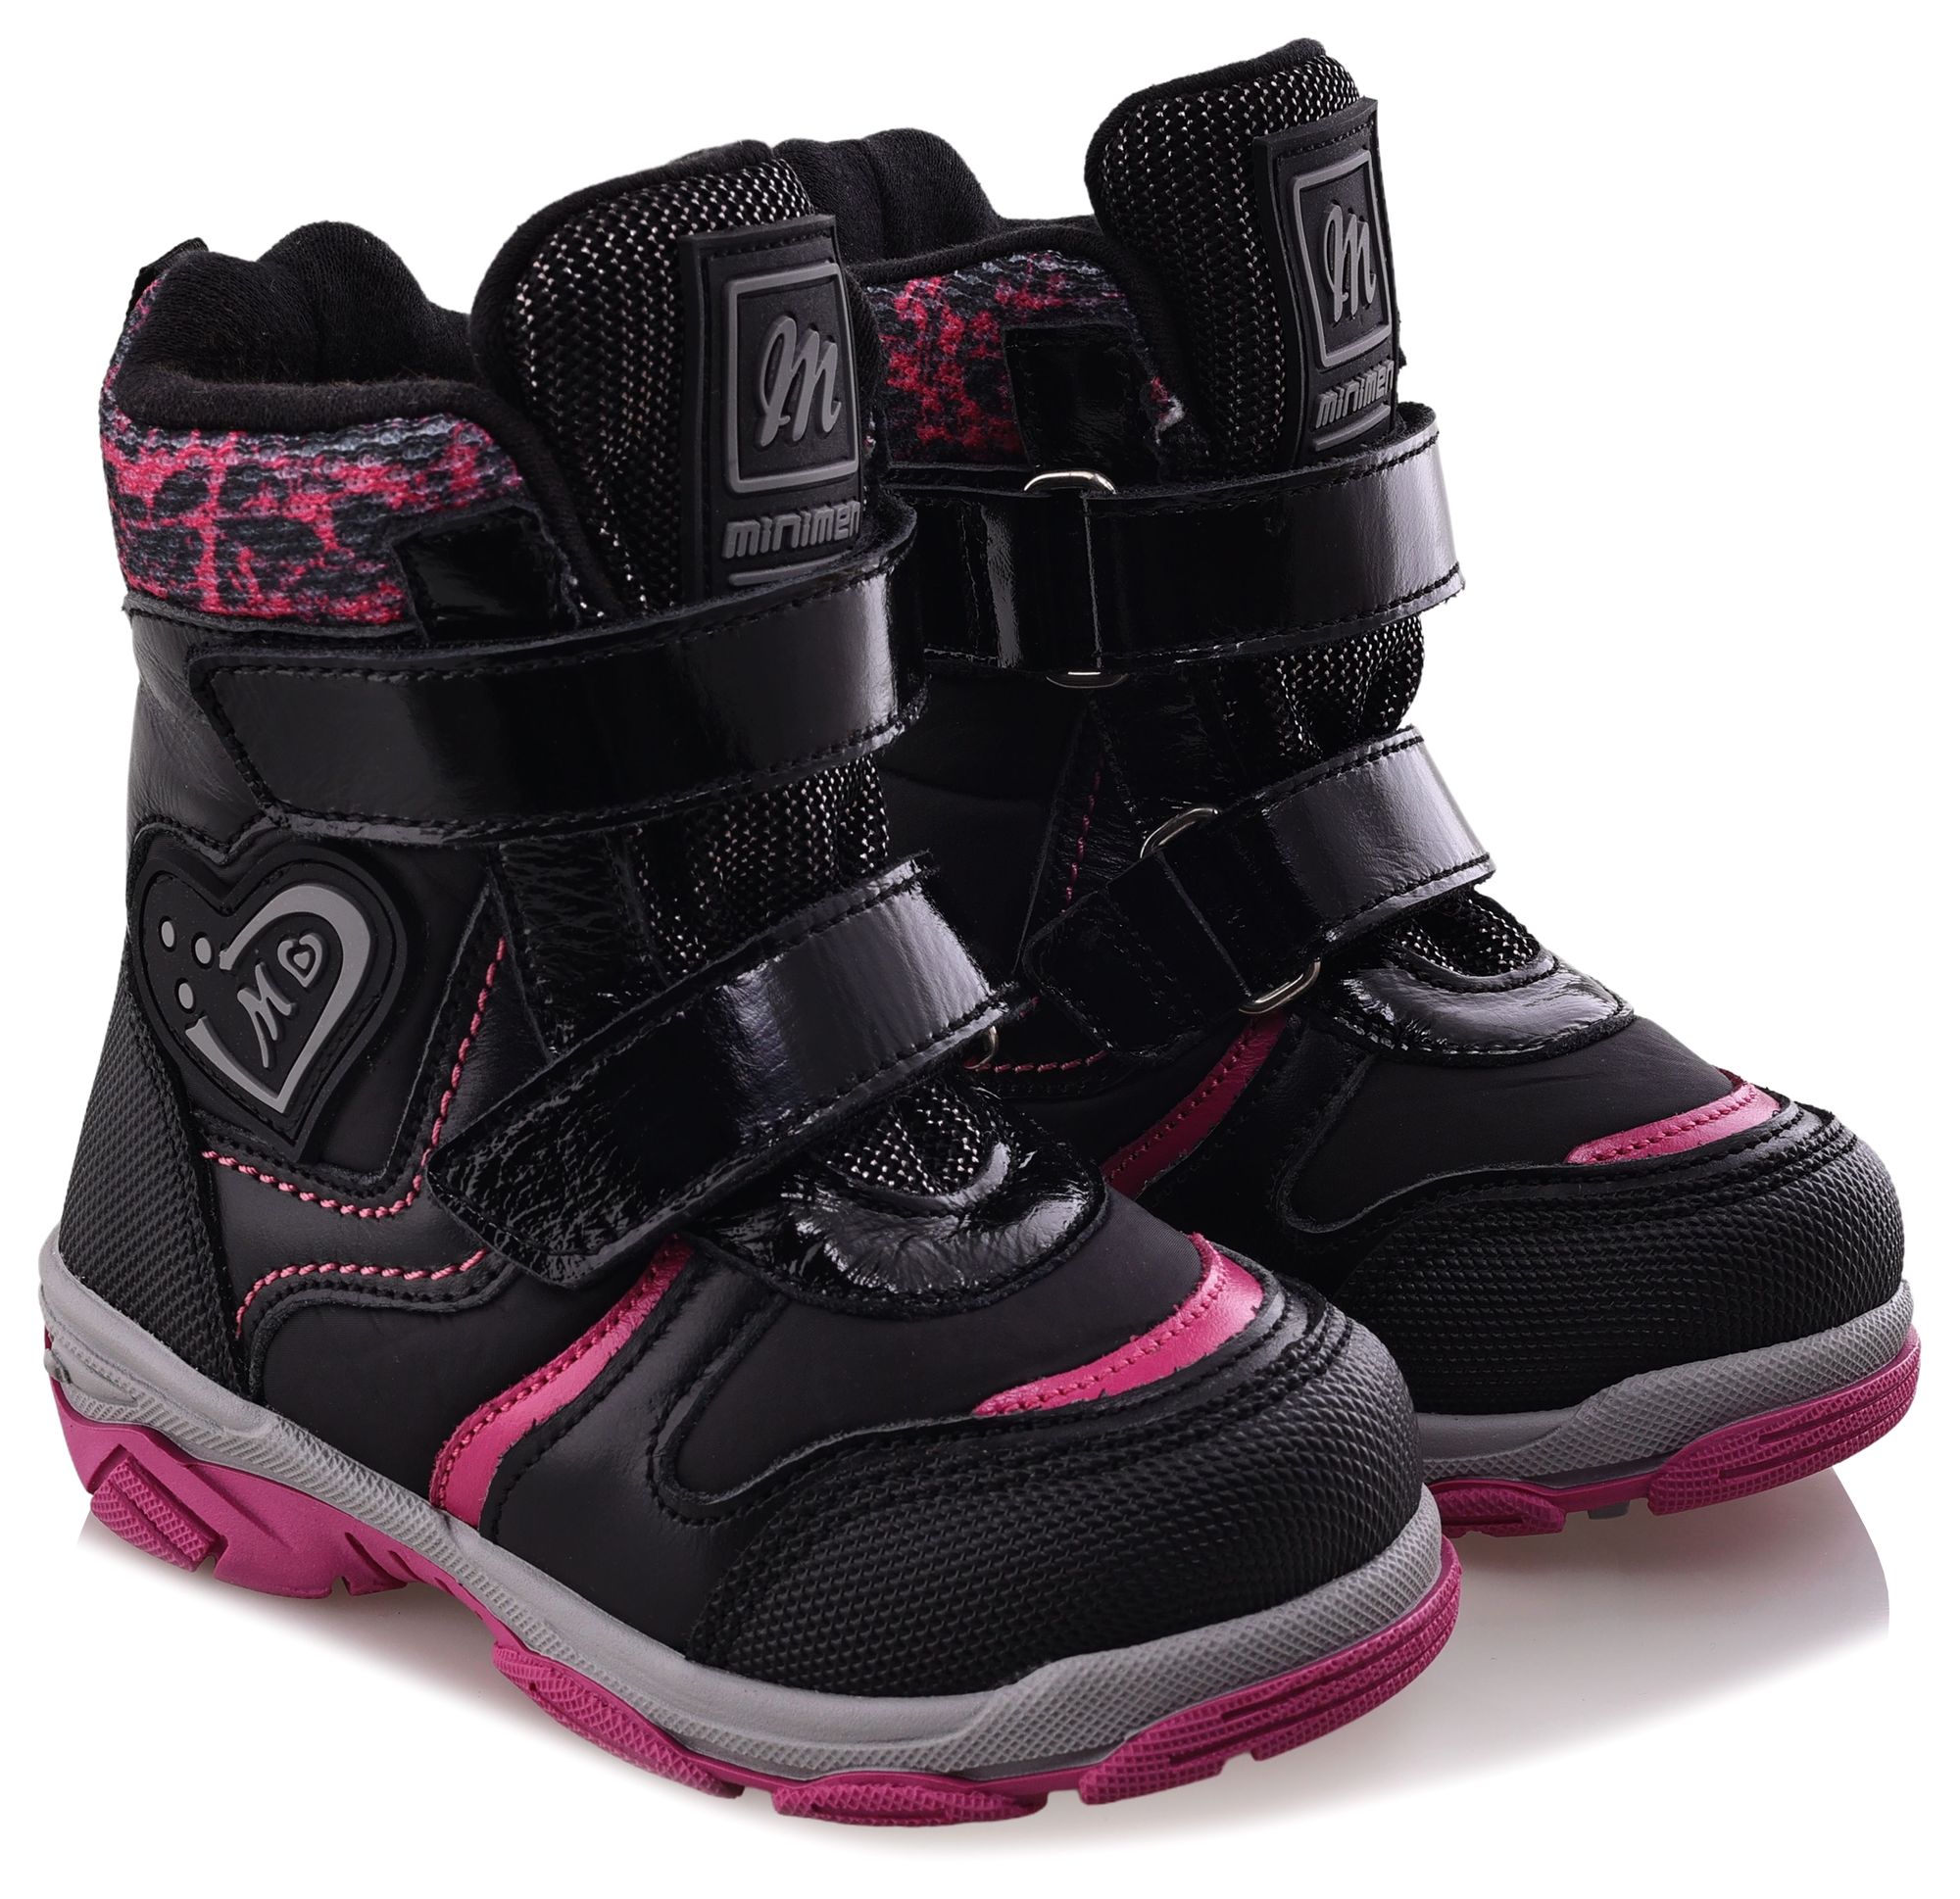 Ботинки Minimen для девочек, чёрные, размер 35, 2656-54-23B-01 ботинки minimen для девочек розовые размер 30 2656 53 23b 02